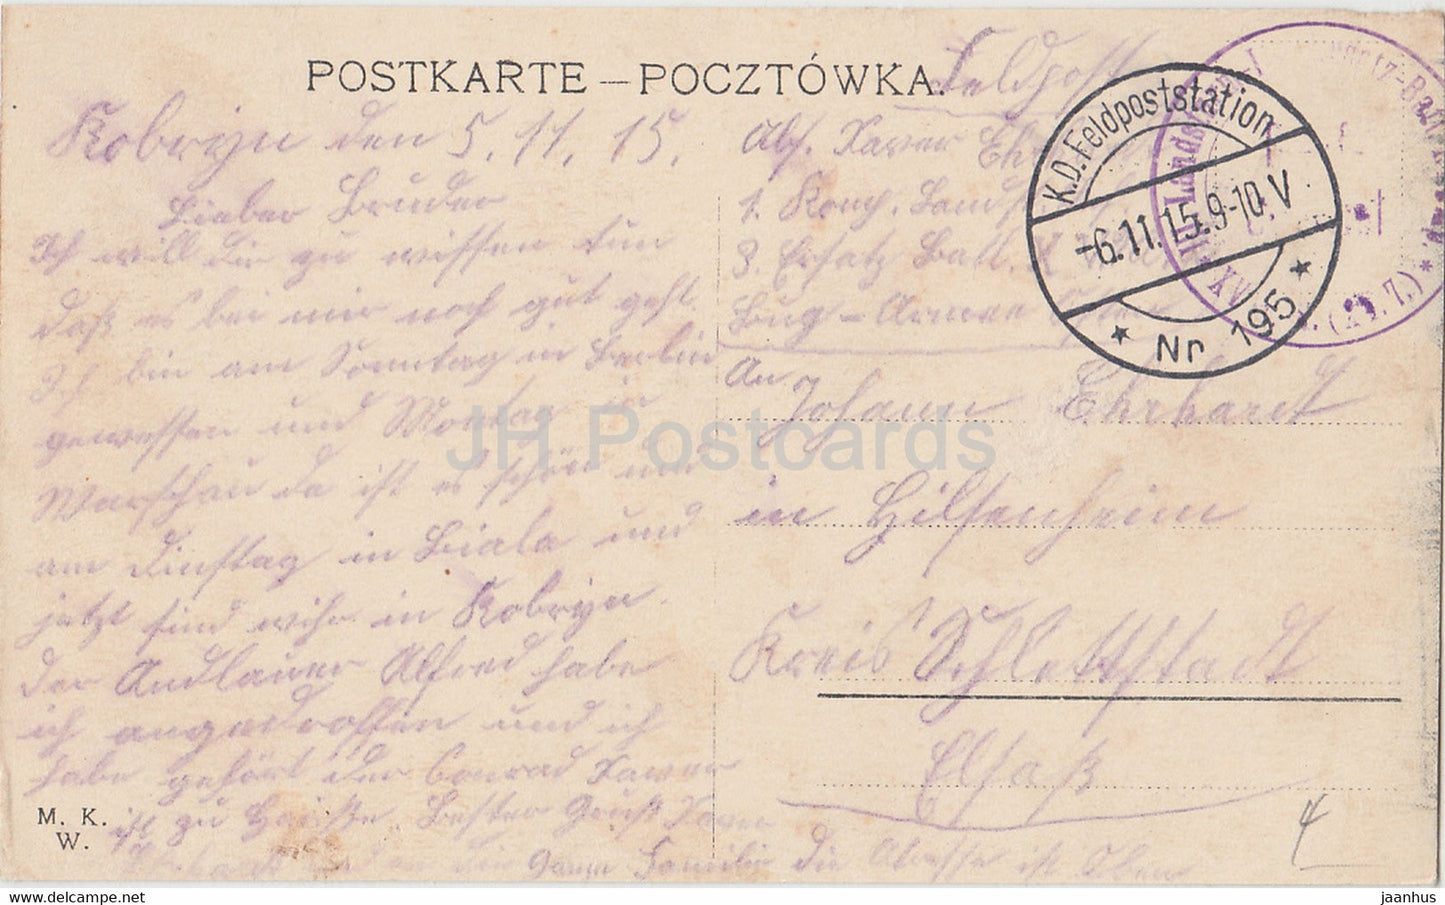 Warschau - Warszawa - Wierzbowastr - ul Wierzbowa - Feldpost - old postcard - 1915 - Poland - used